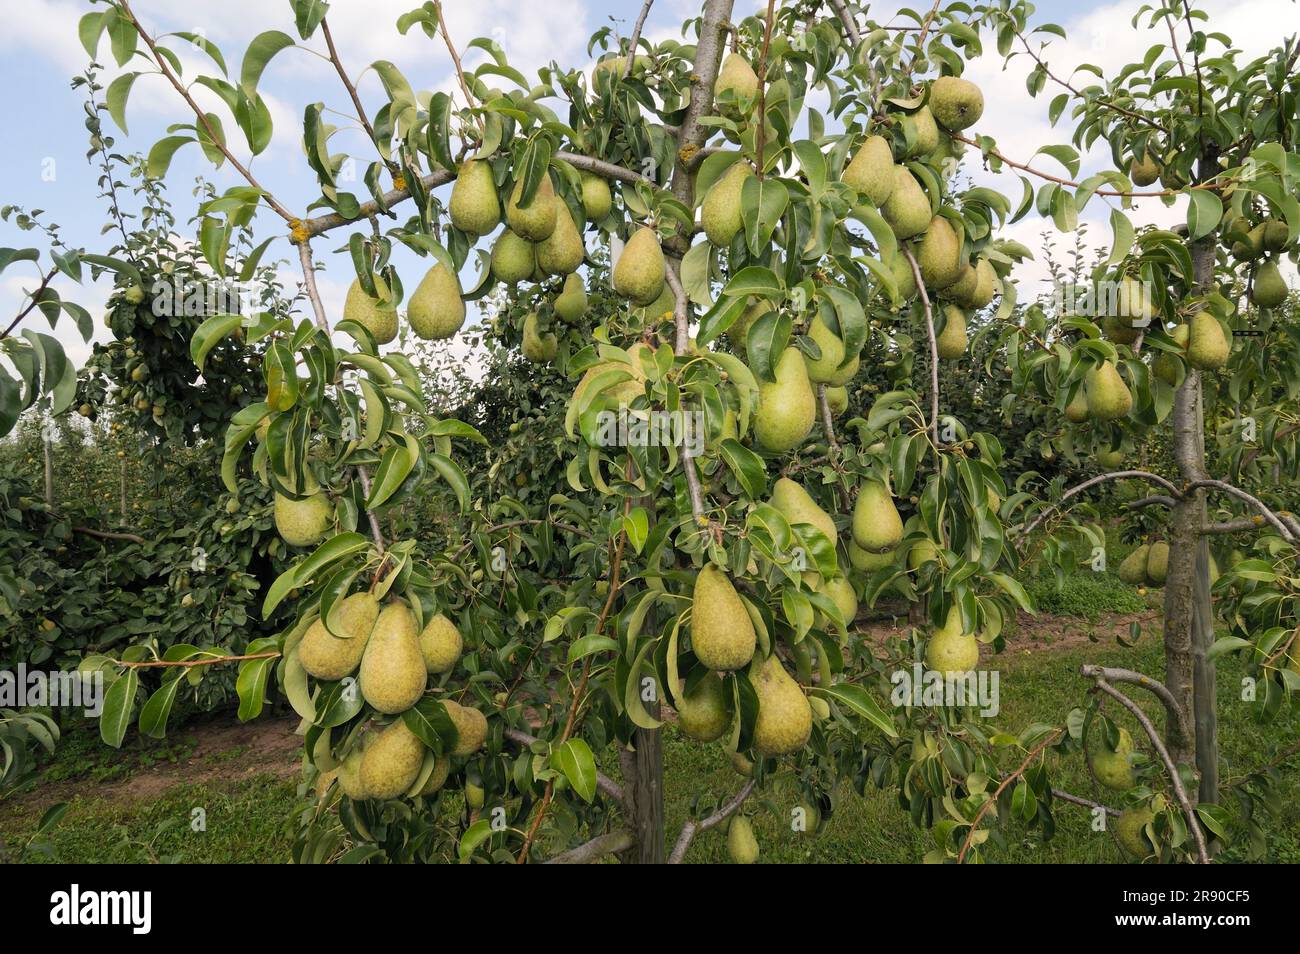 Pears Agata on tree (Pyrus communis) Stock Photo